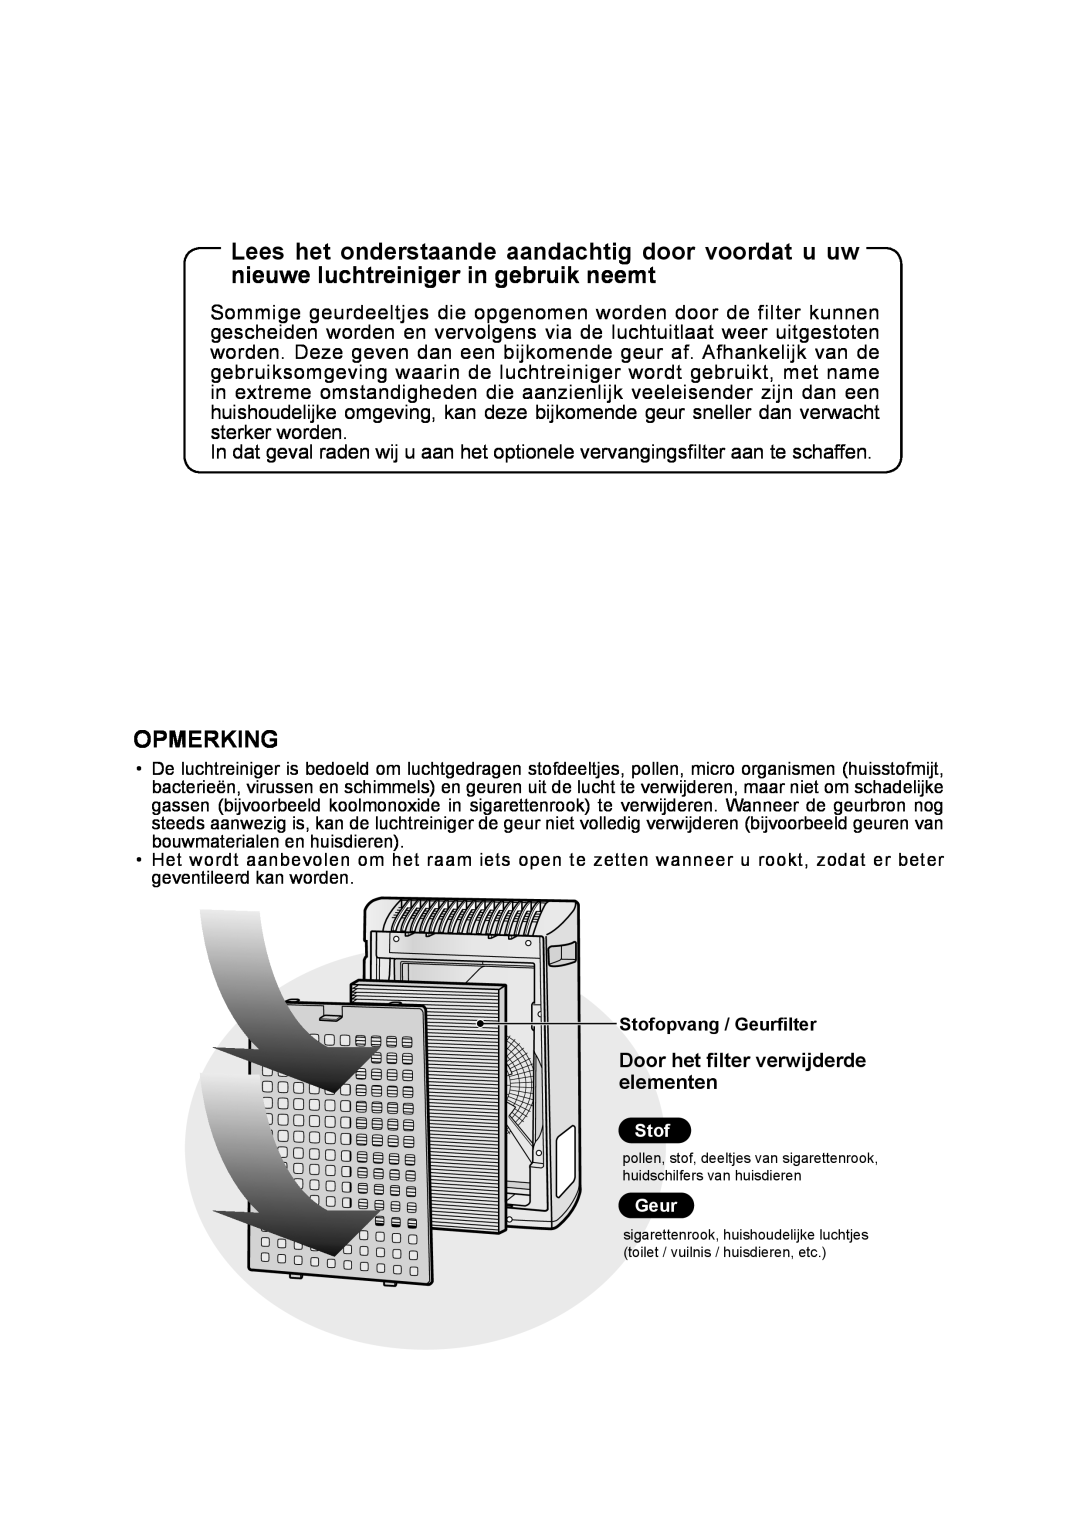 Sharp FU-Y30EU operation manual Opmerking, Door het filter verwijderde elementen 